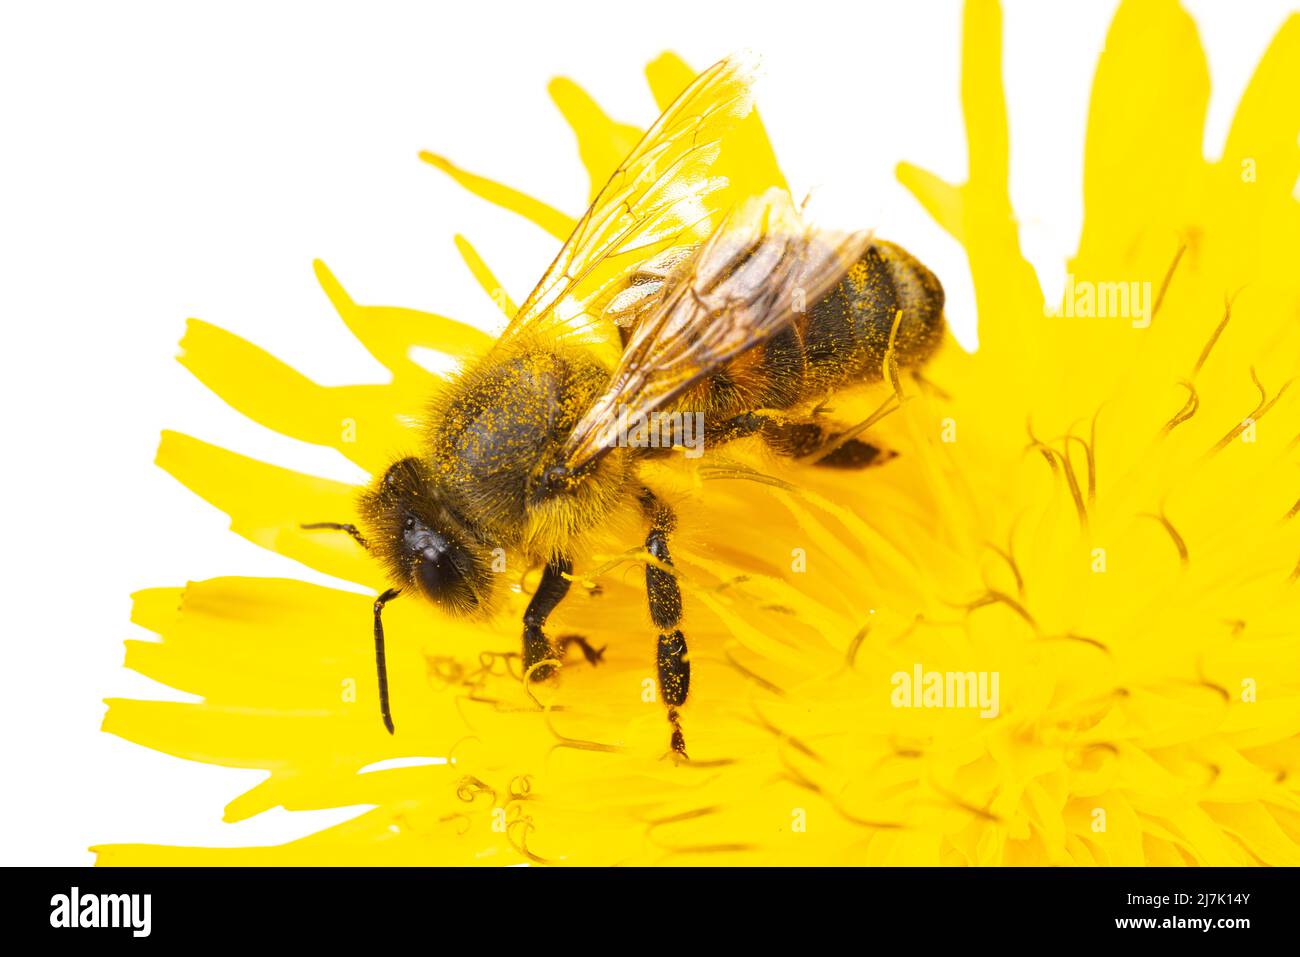 Insectes d'europe - abeilles: Macro de l'abeille européenne ( APIs mellifera) isolé sur fond blanc assis sur une fleur jaune Banque D'Images